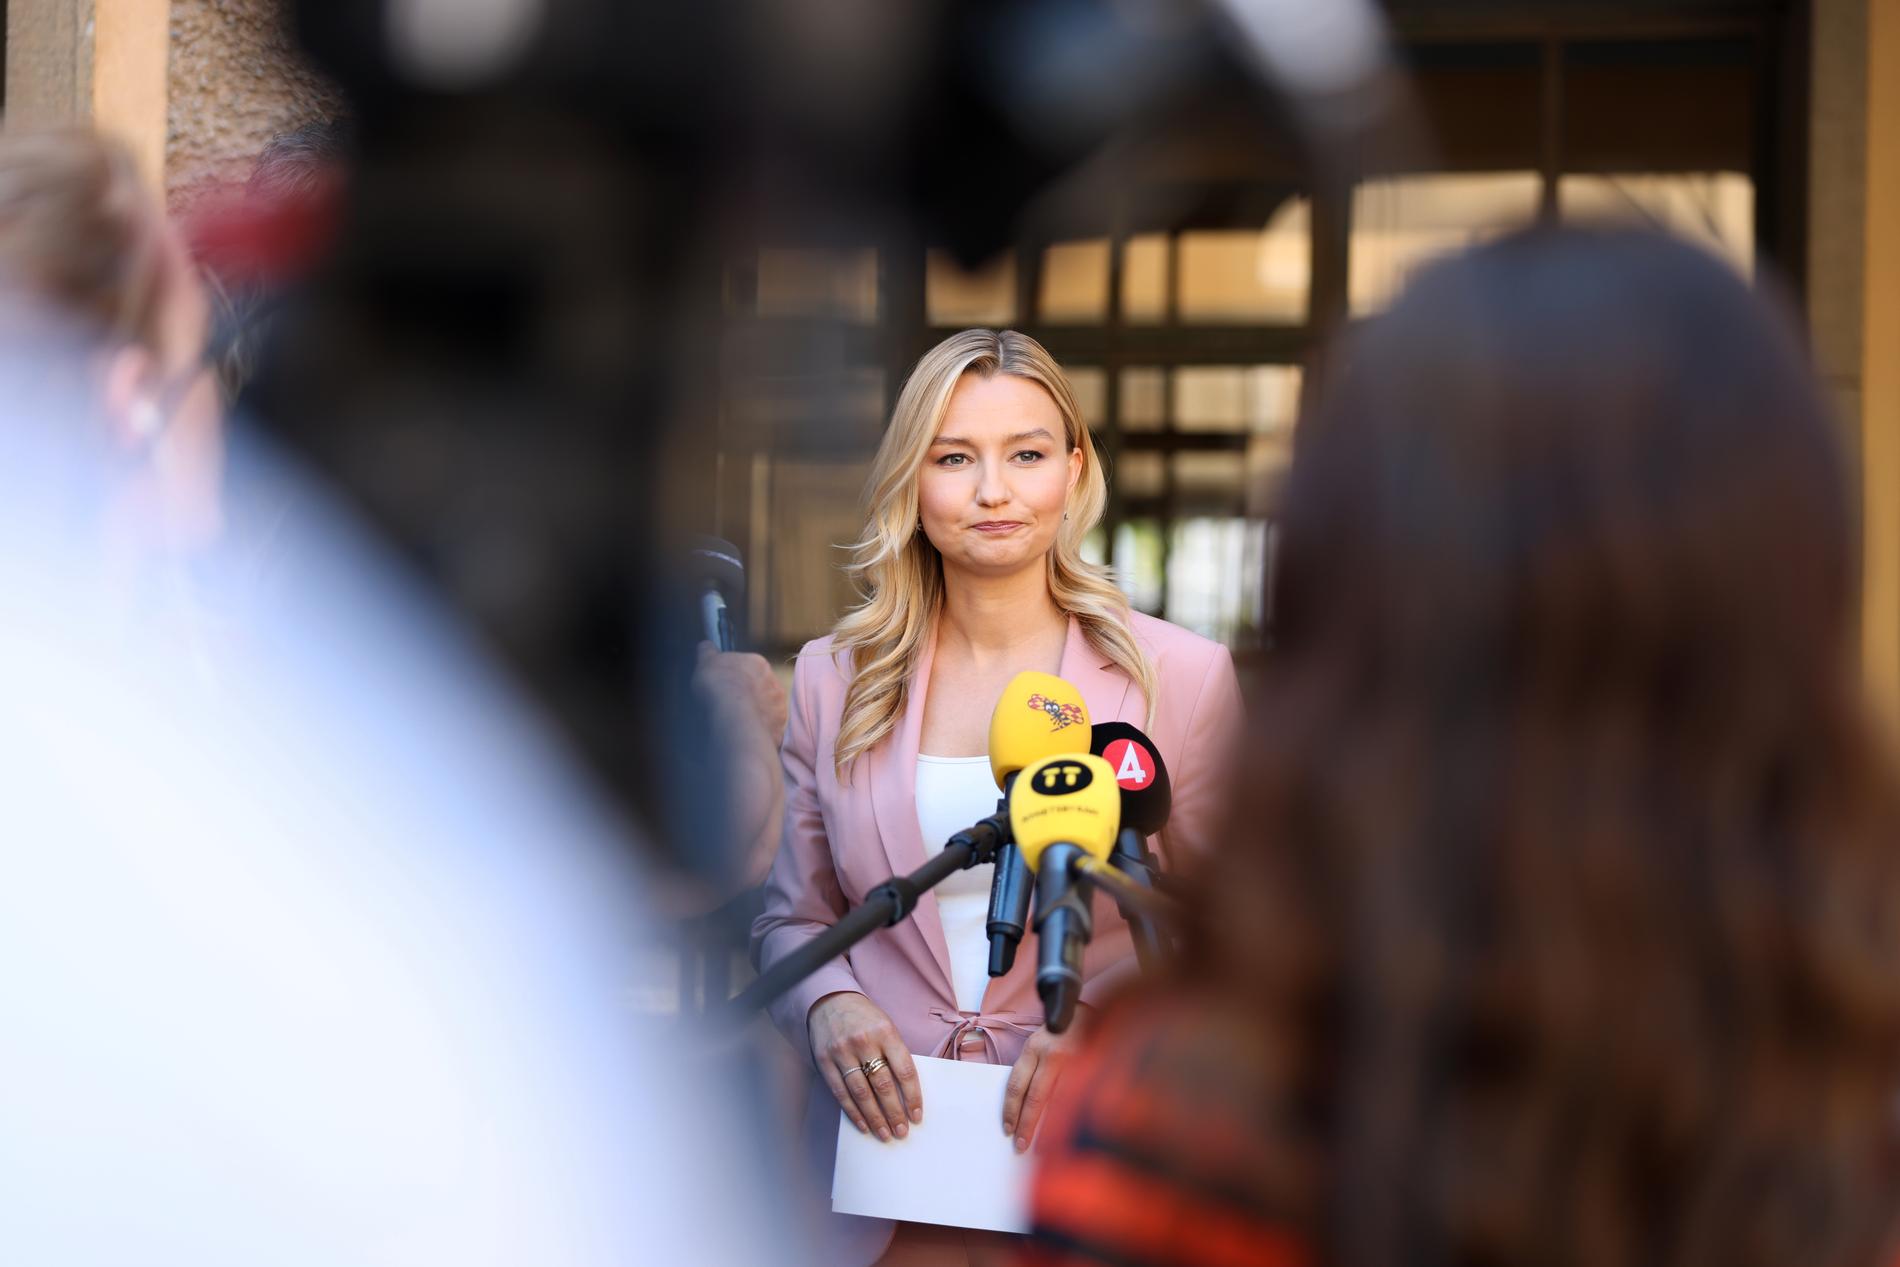 ”I Sverige kan även sanning vara förtal”, säger Ebba Busch under en pressträff.